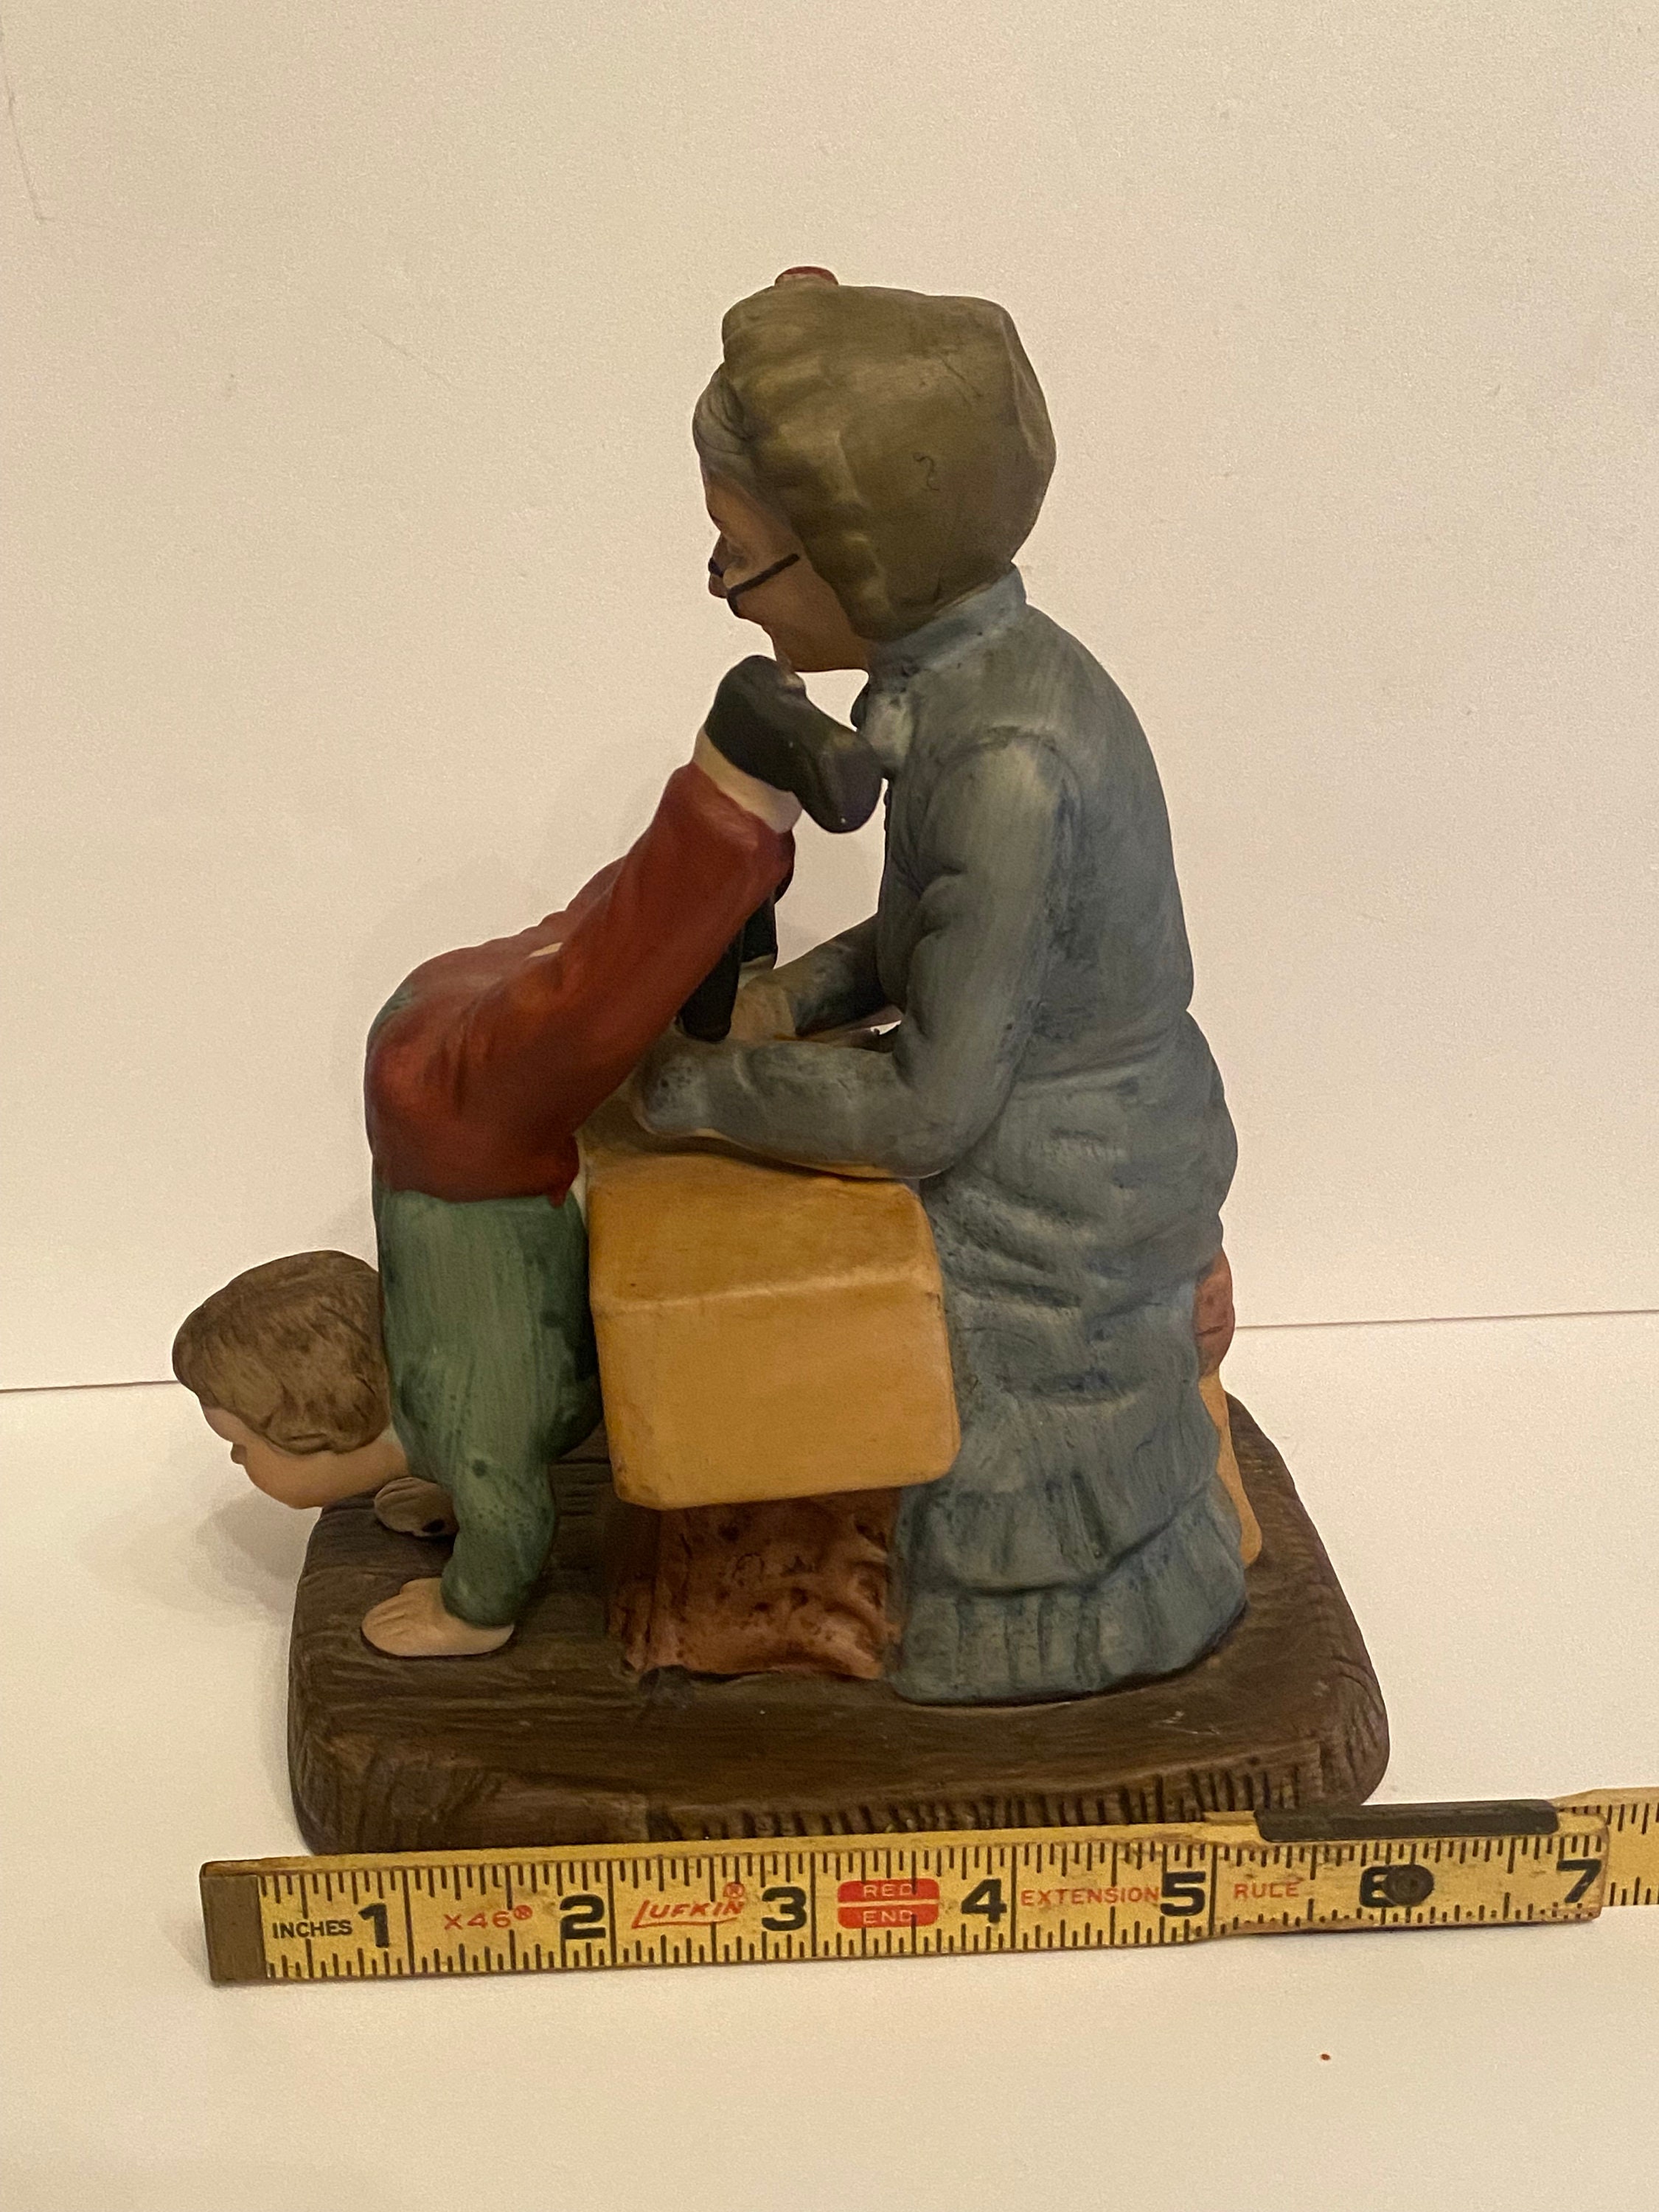 Vintage Old Lady Grandma Sewing Upside Down Boy's Pants Figurine